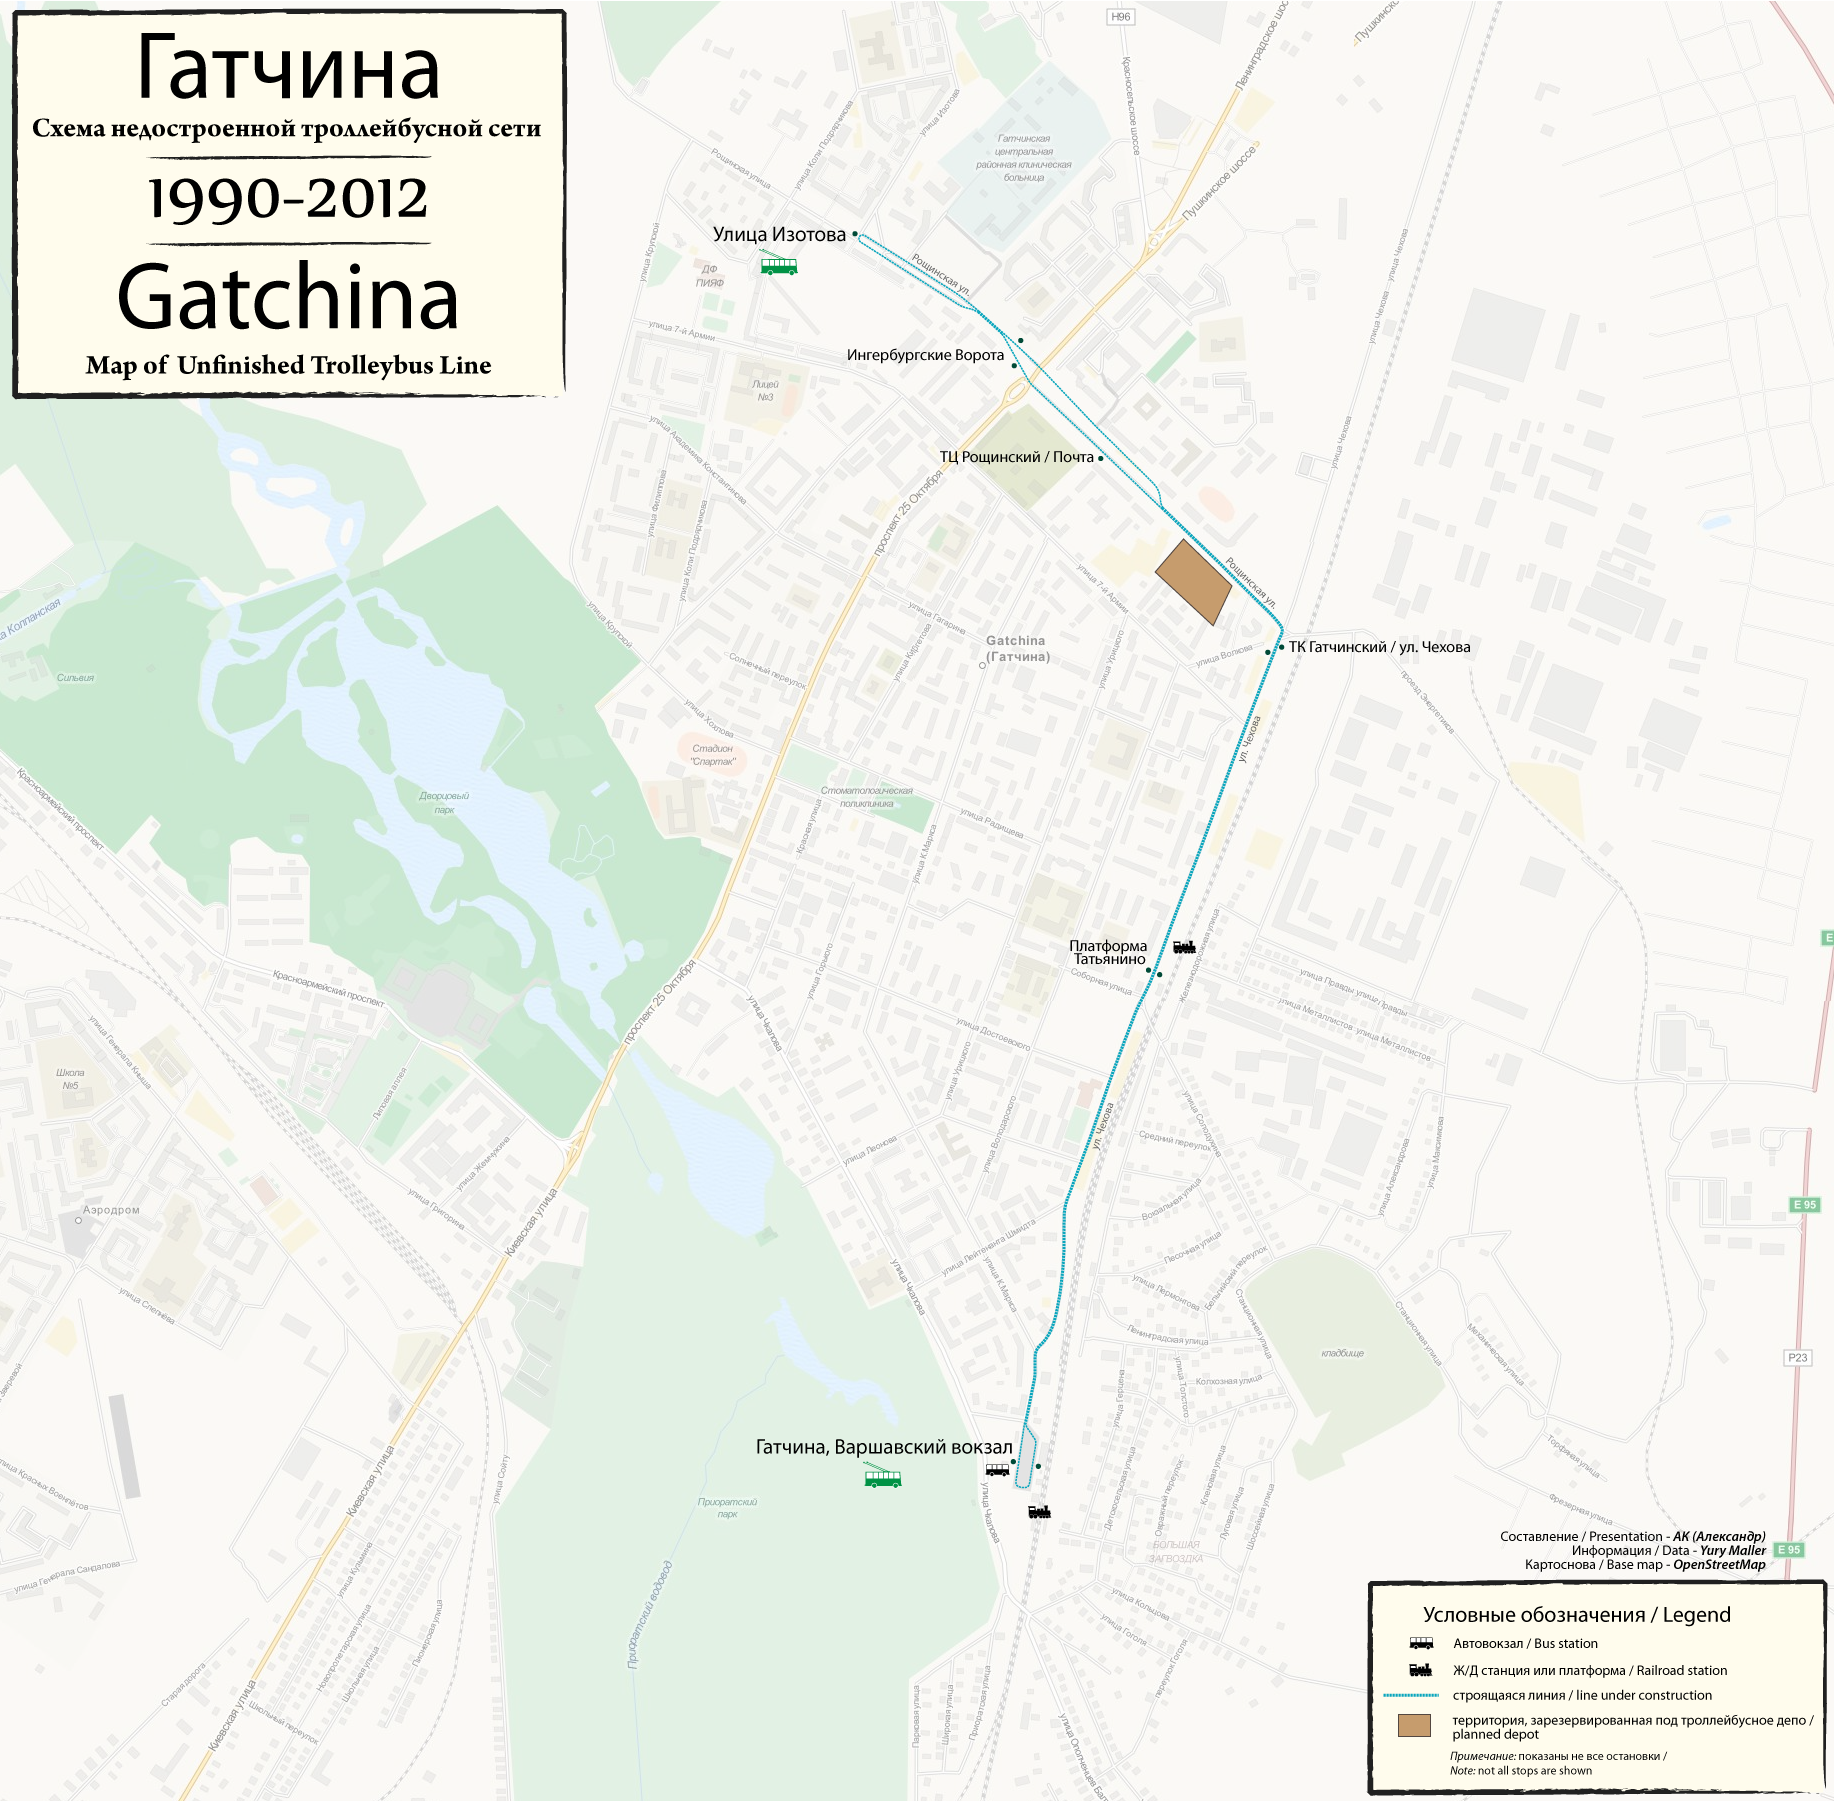 Gatchina — Maps